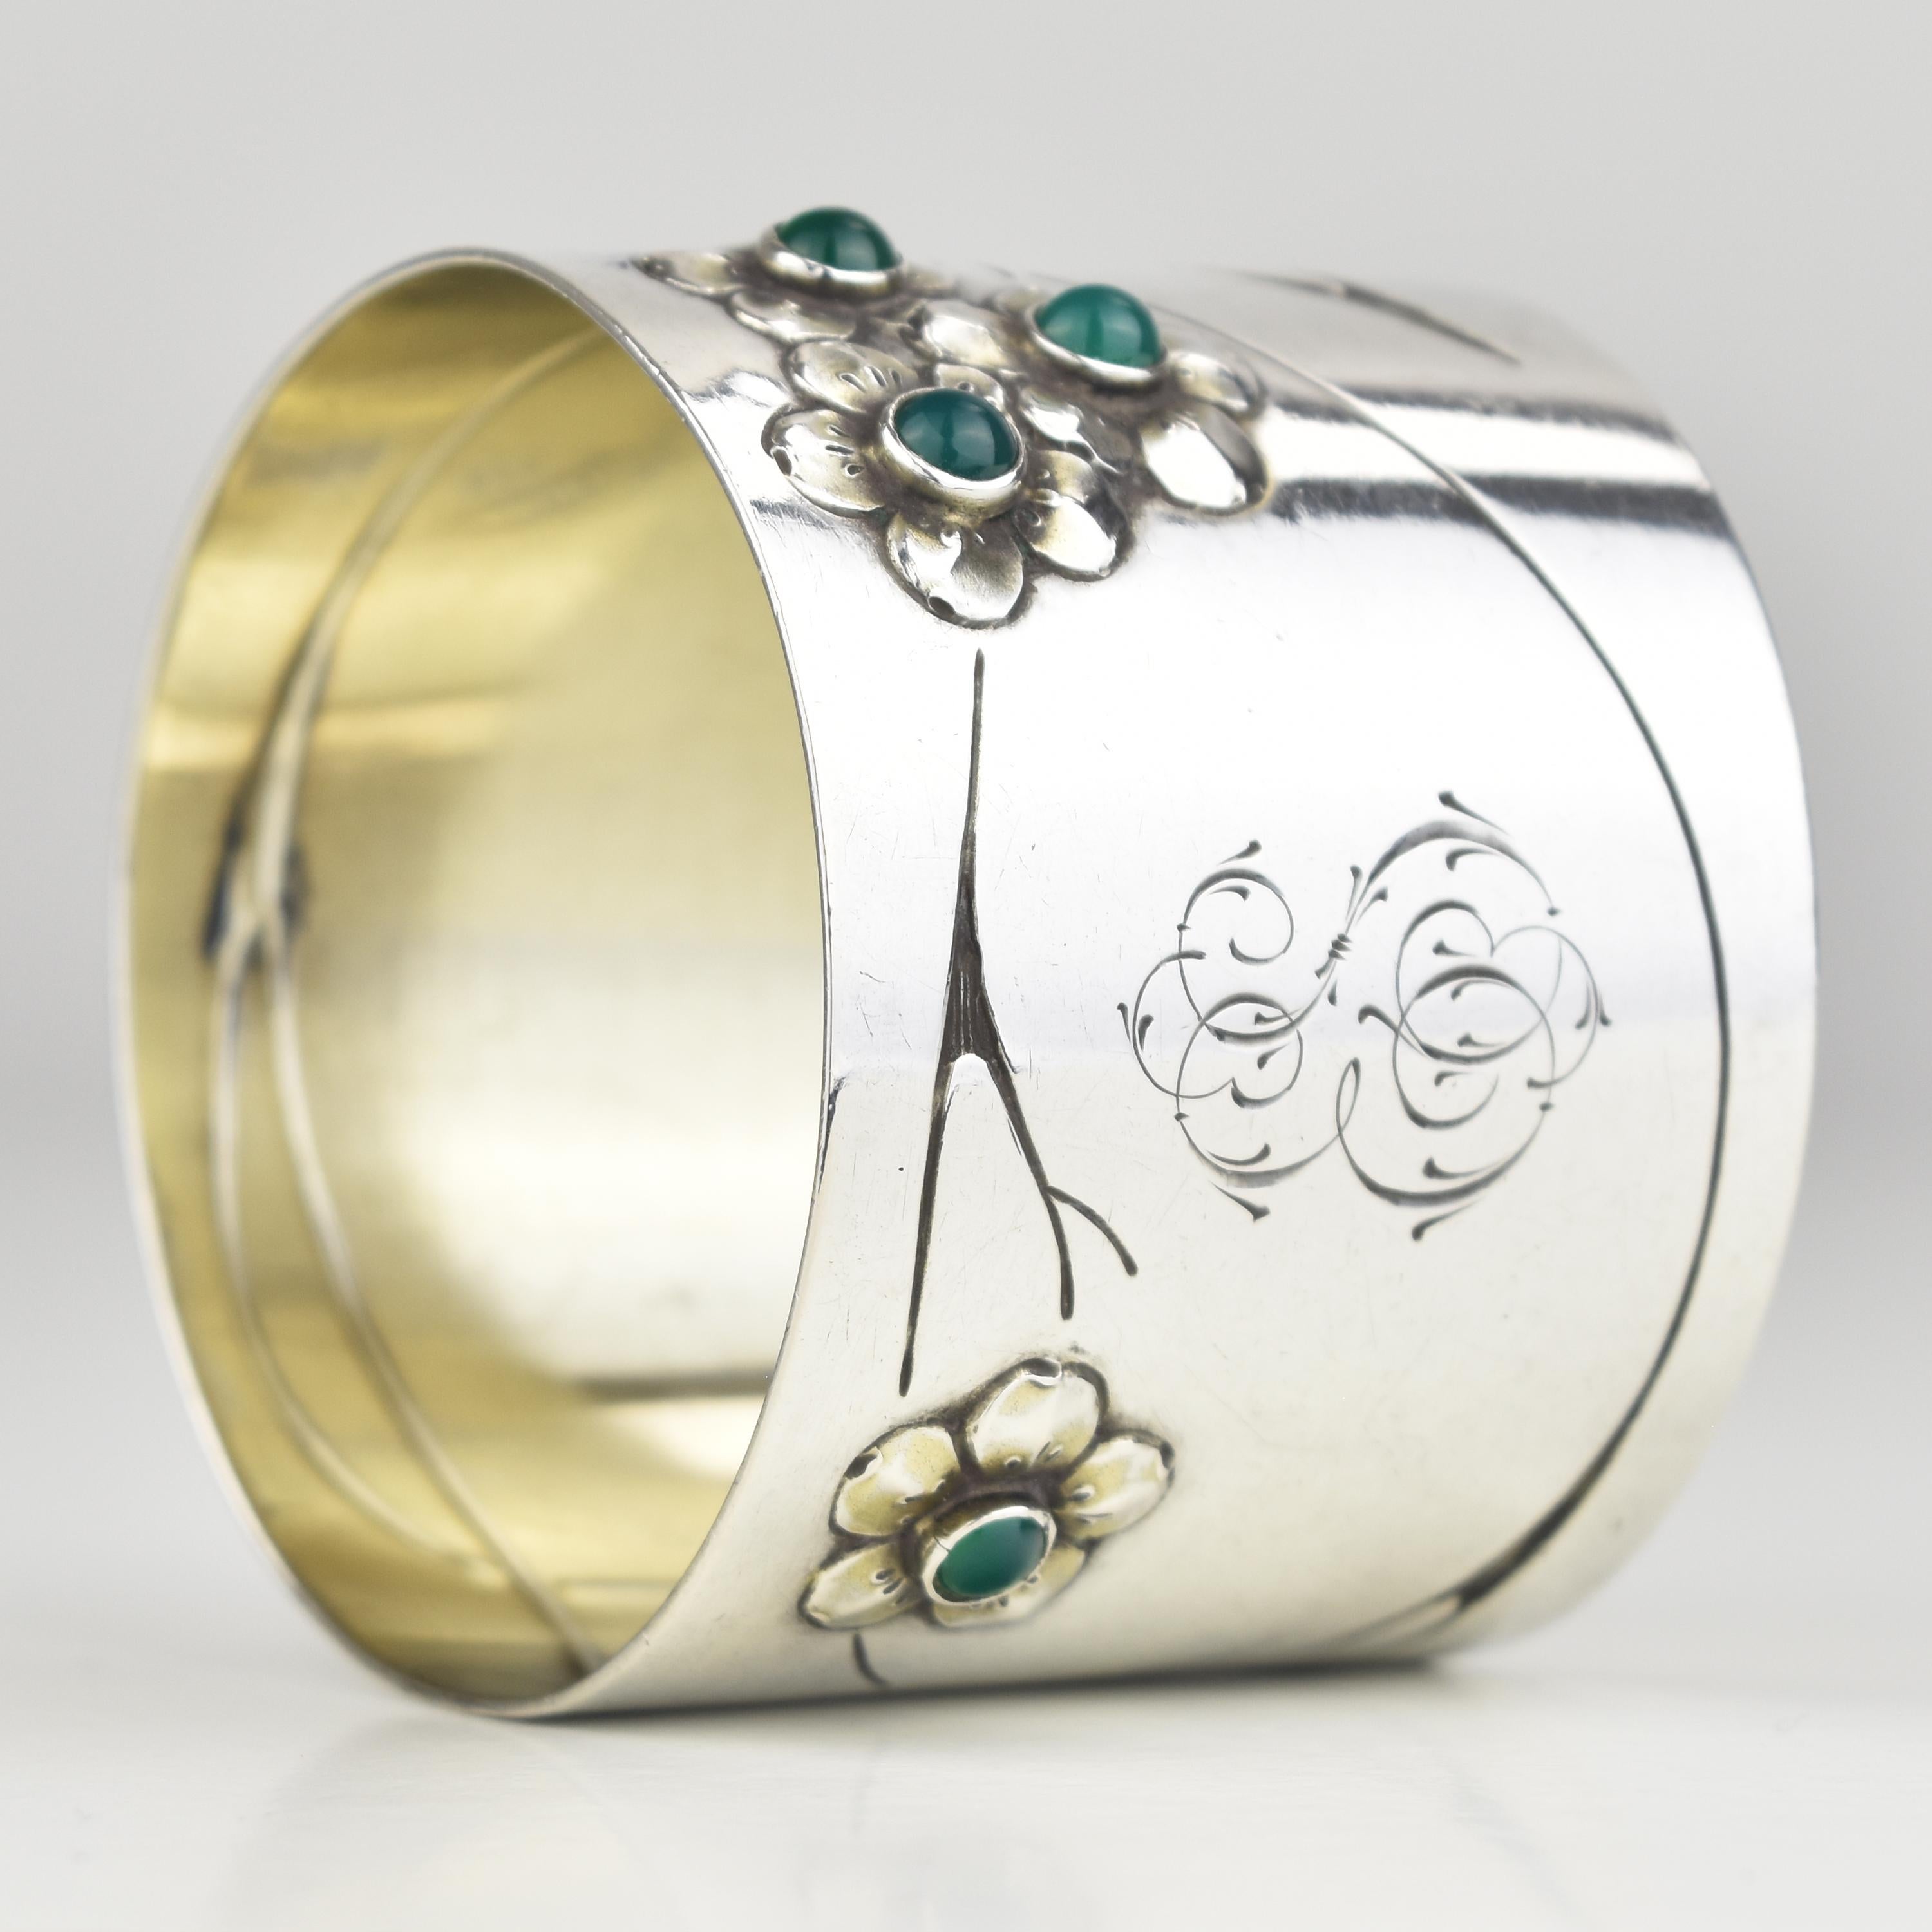 Antique Art Nouveau German Silver Napkin Ring w. Glass Cabochons For Sale 4